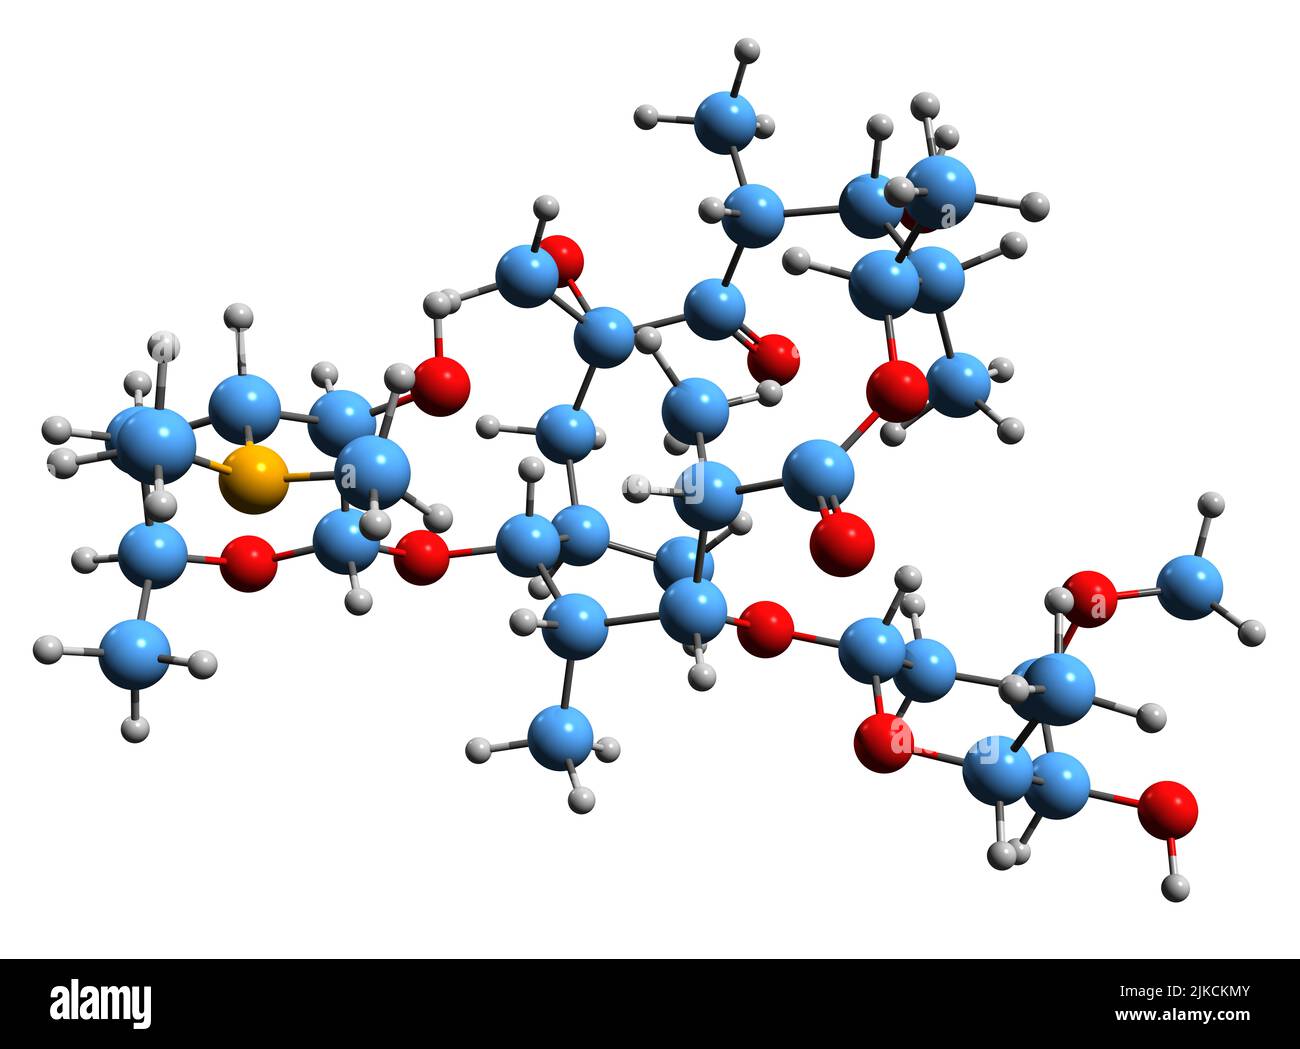 3D Bild der Skelettformel von Oleandomycin - molekulare chemische Struktur des Makrolid-Antibiotikums Е704 isoliert auf weißem Hintergrund Stockfoto